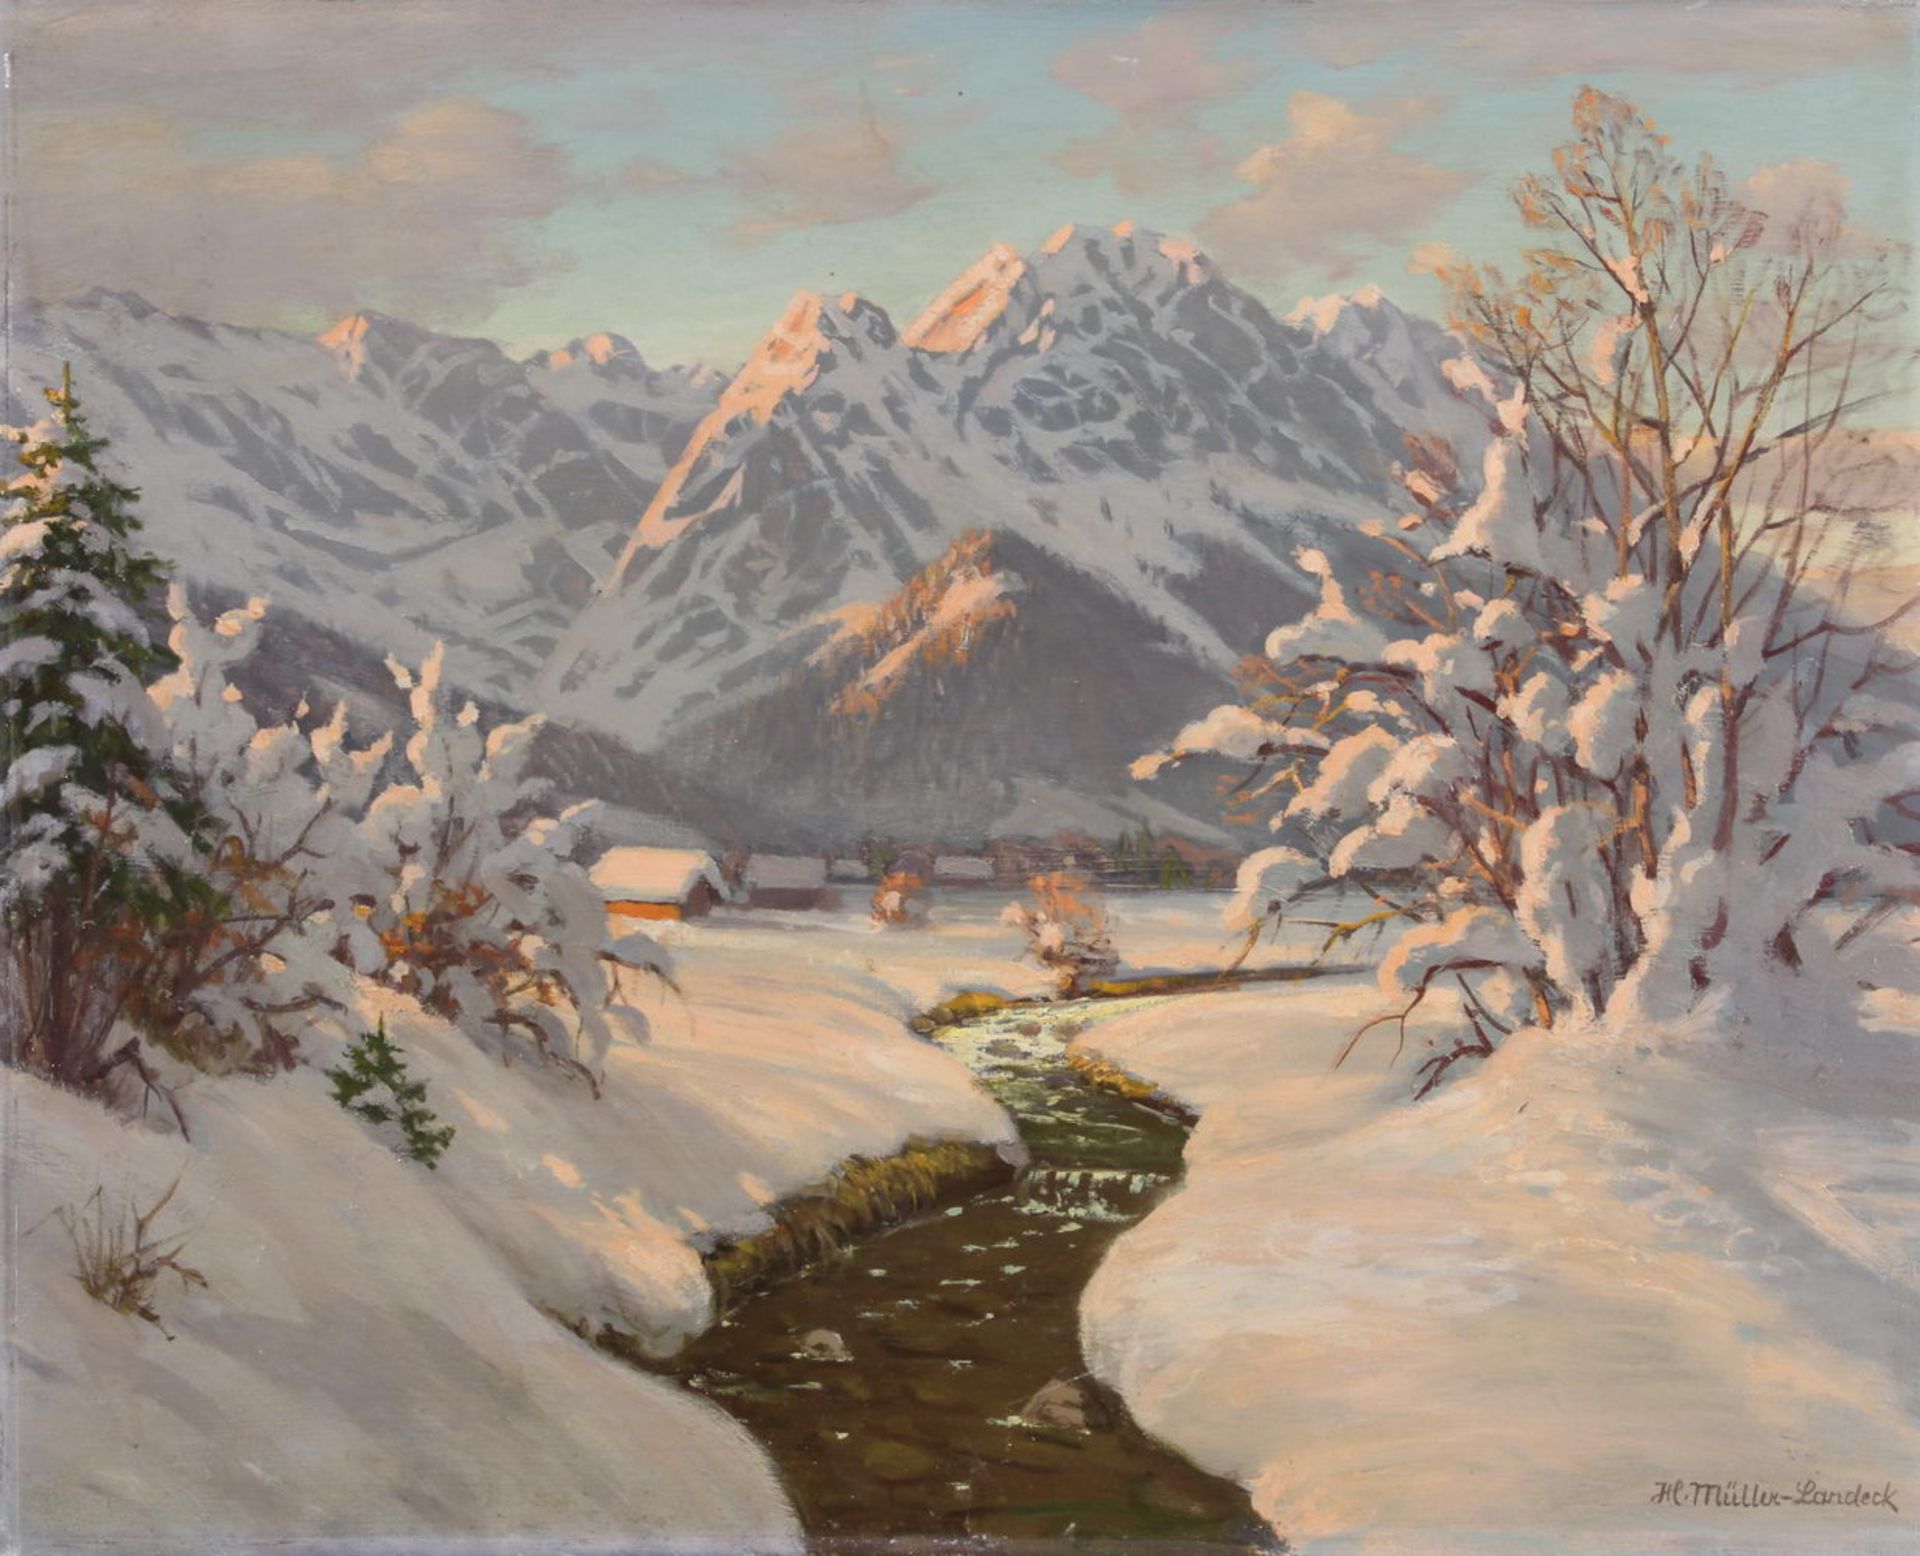 Müller-Landeck, Hertha (1902 München - unbek., deutsche Künstlerin), "Wintermorgen bei Garmisch